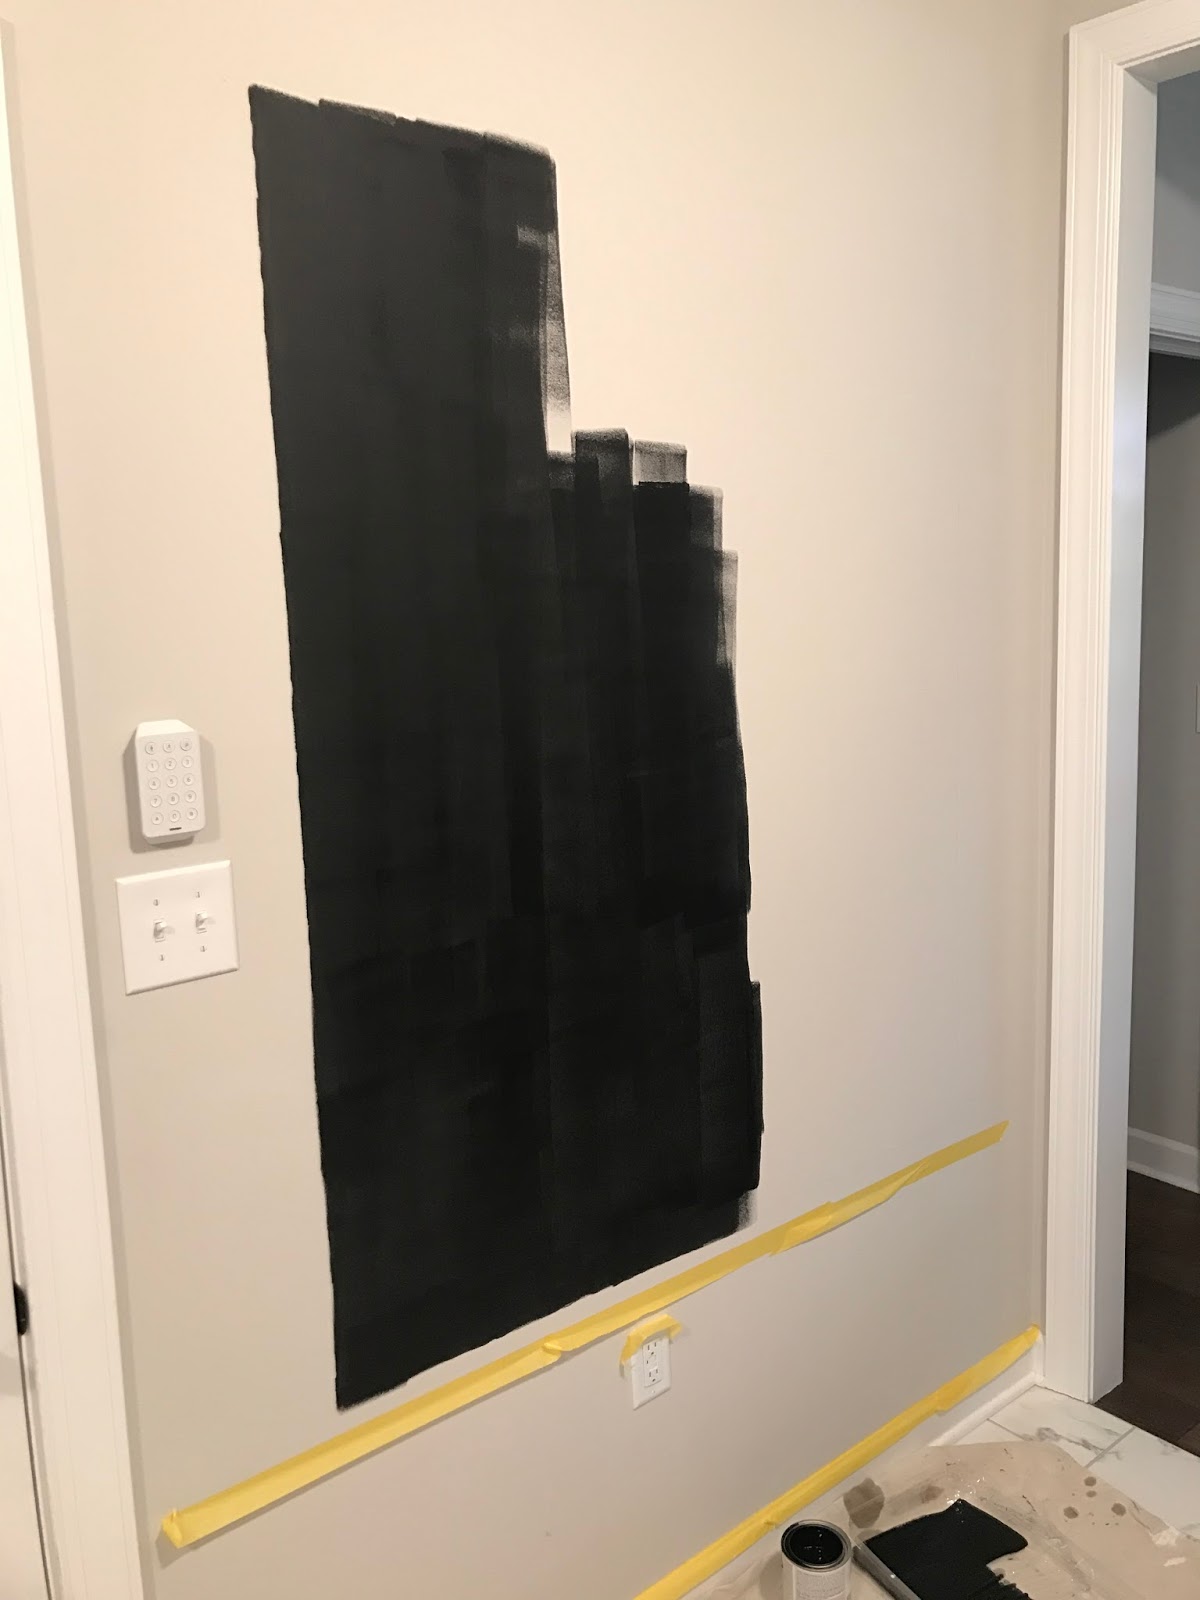 Chalkboard Paint on Wall